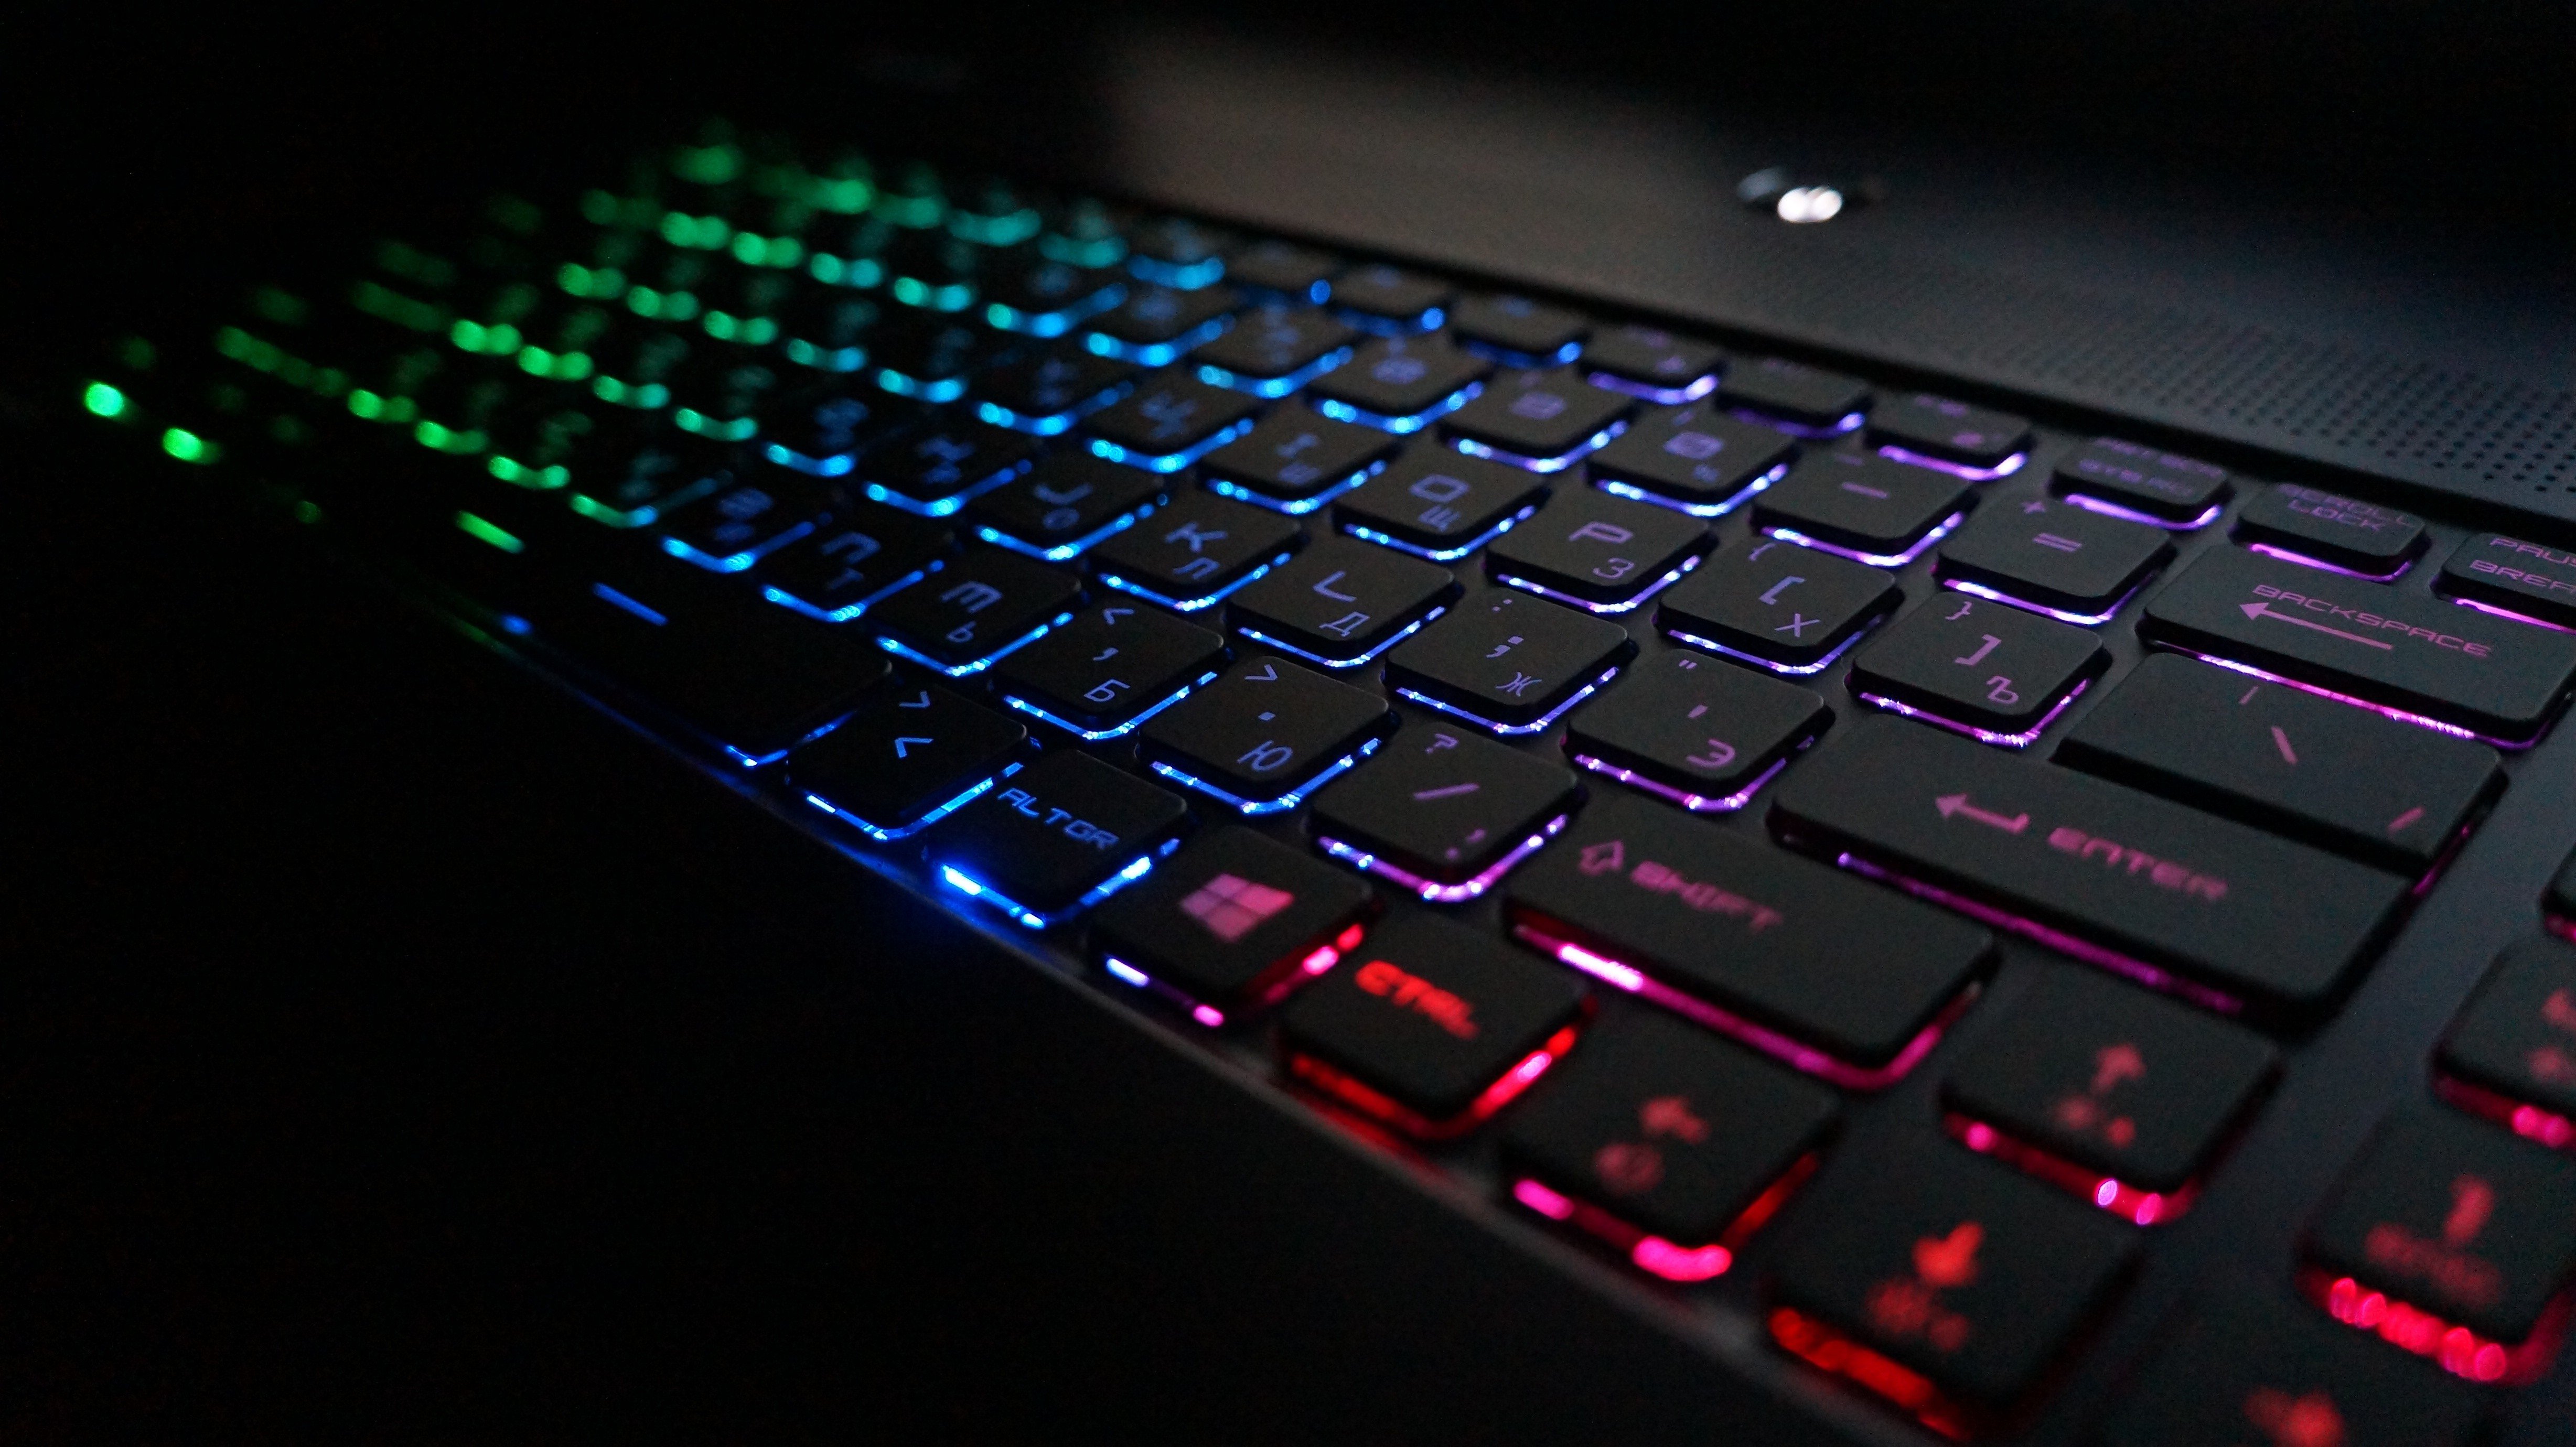 tastatur hintergrund hd,computer tastatur,blau,rot,licht,computerhardware